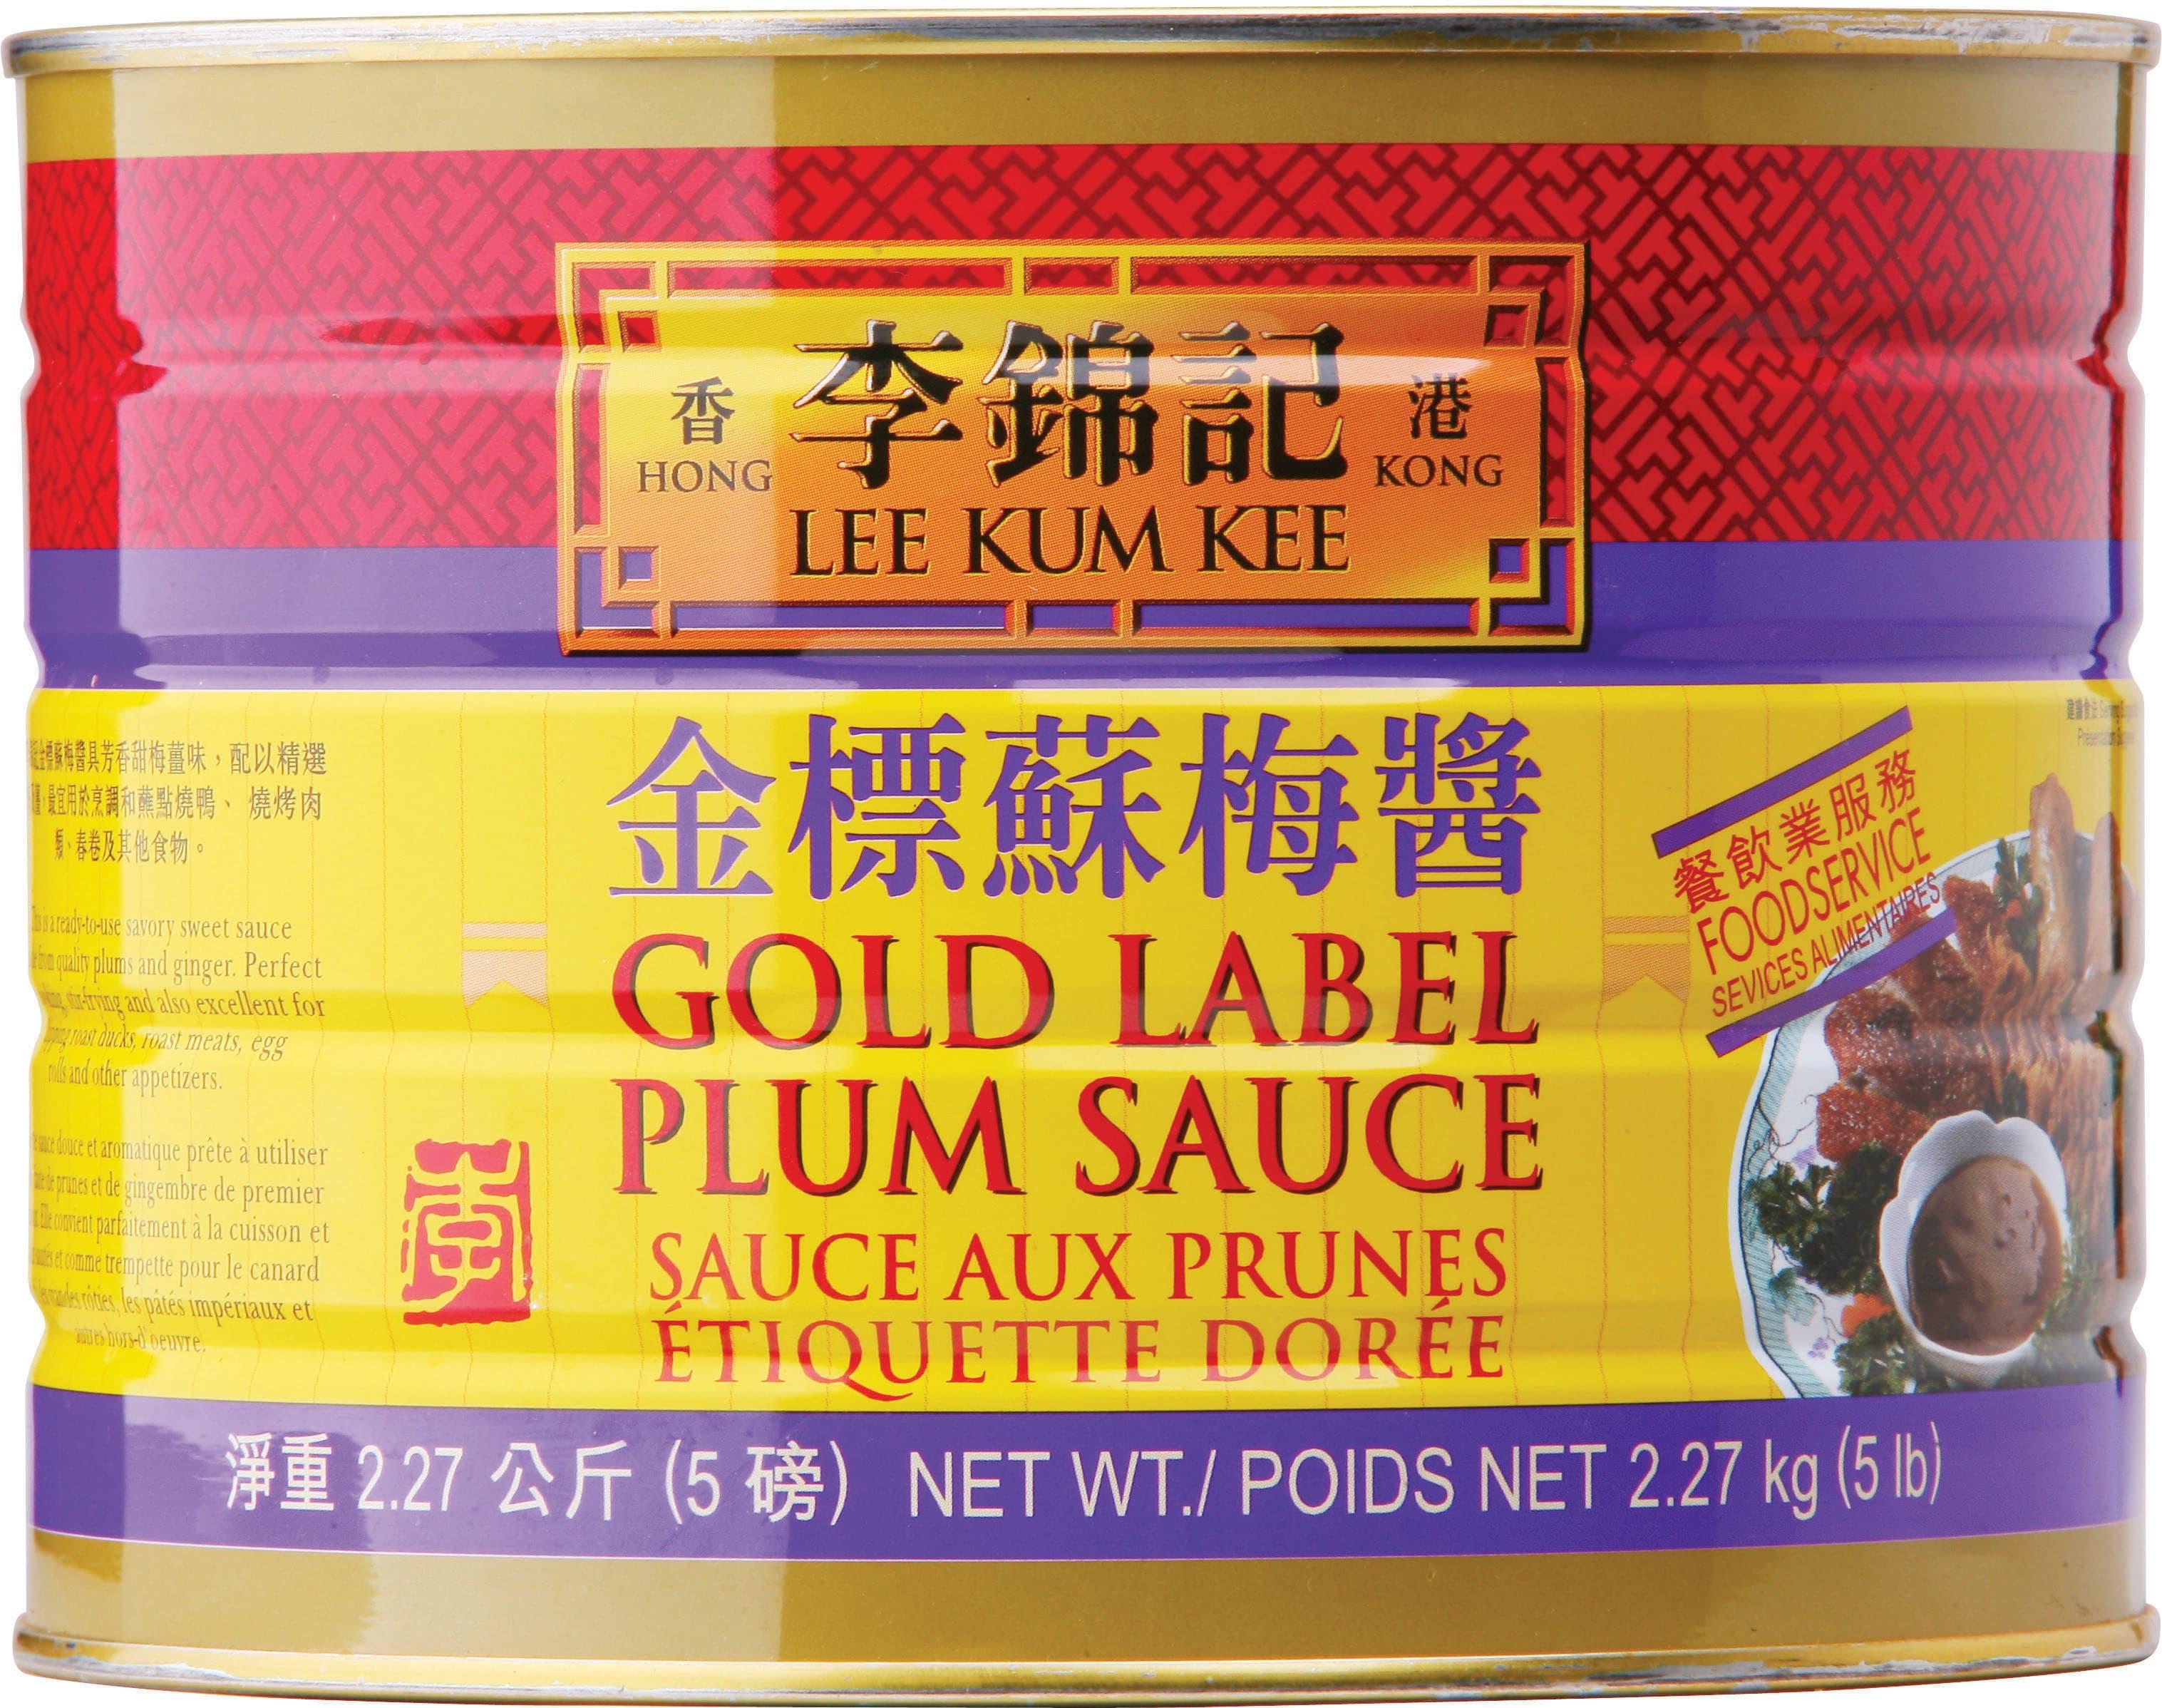 lee-kum-kee-plum-sauce